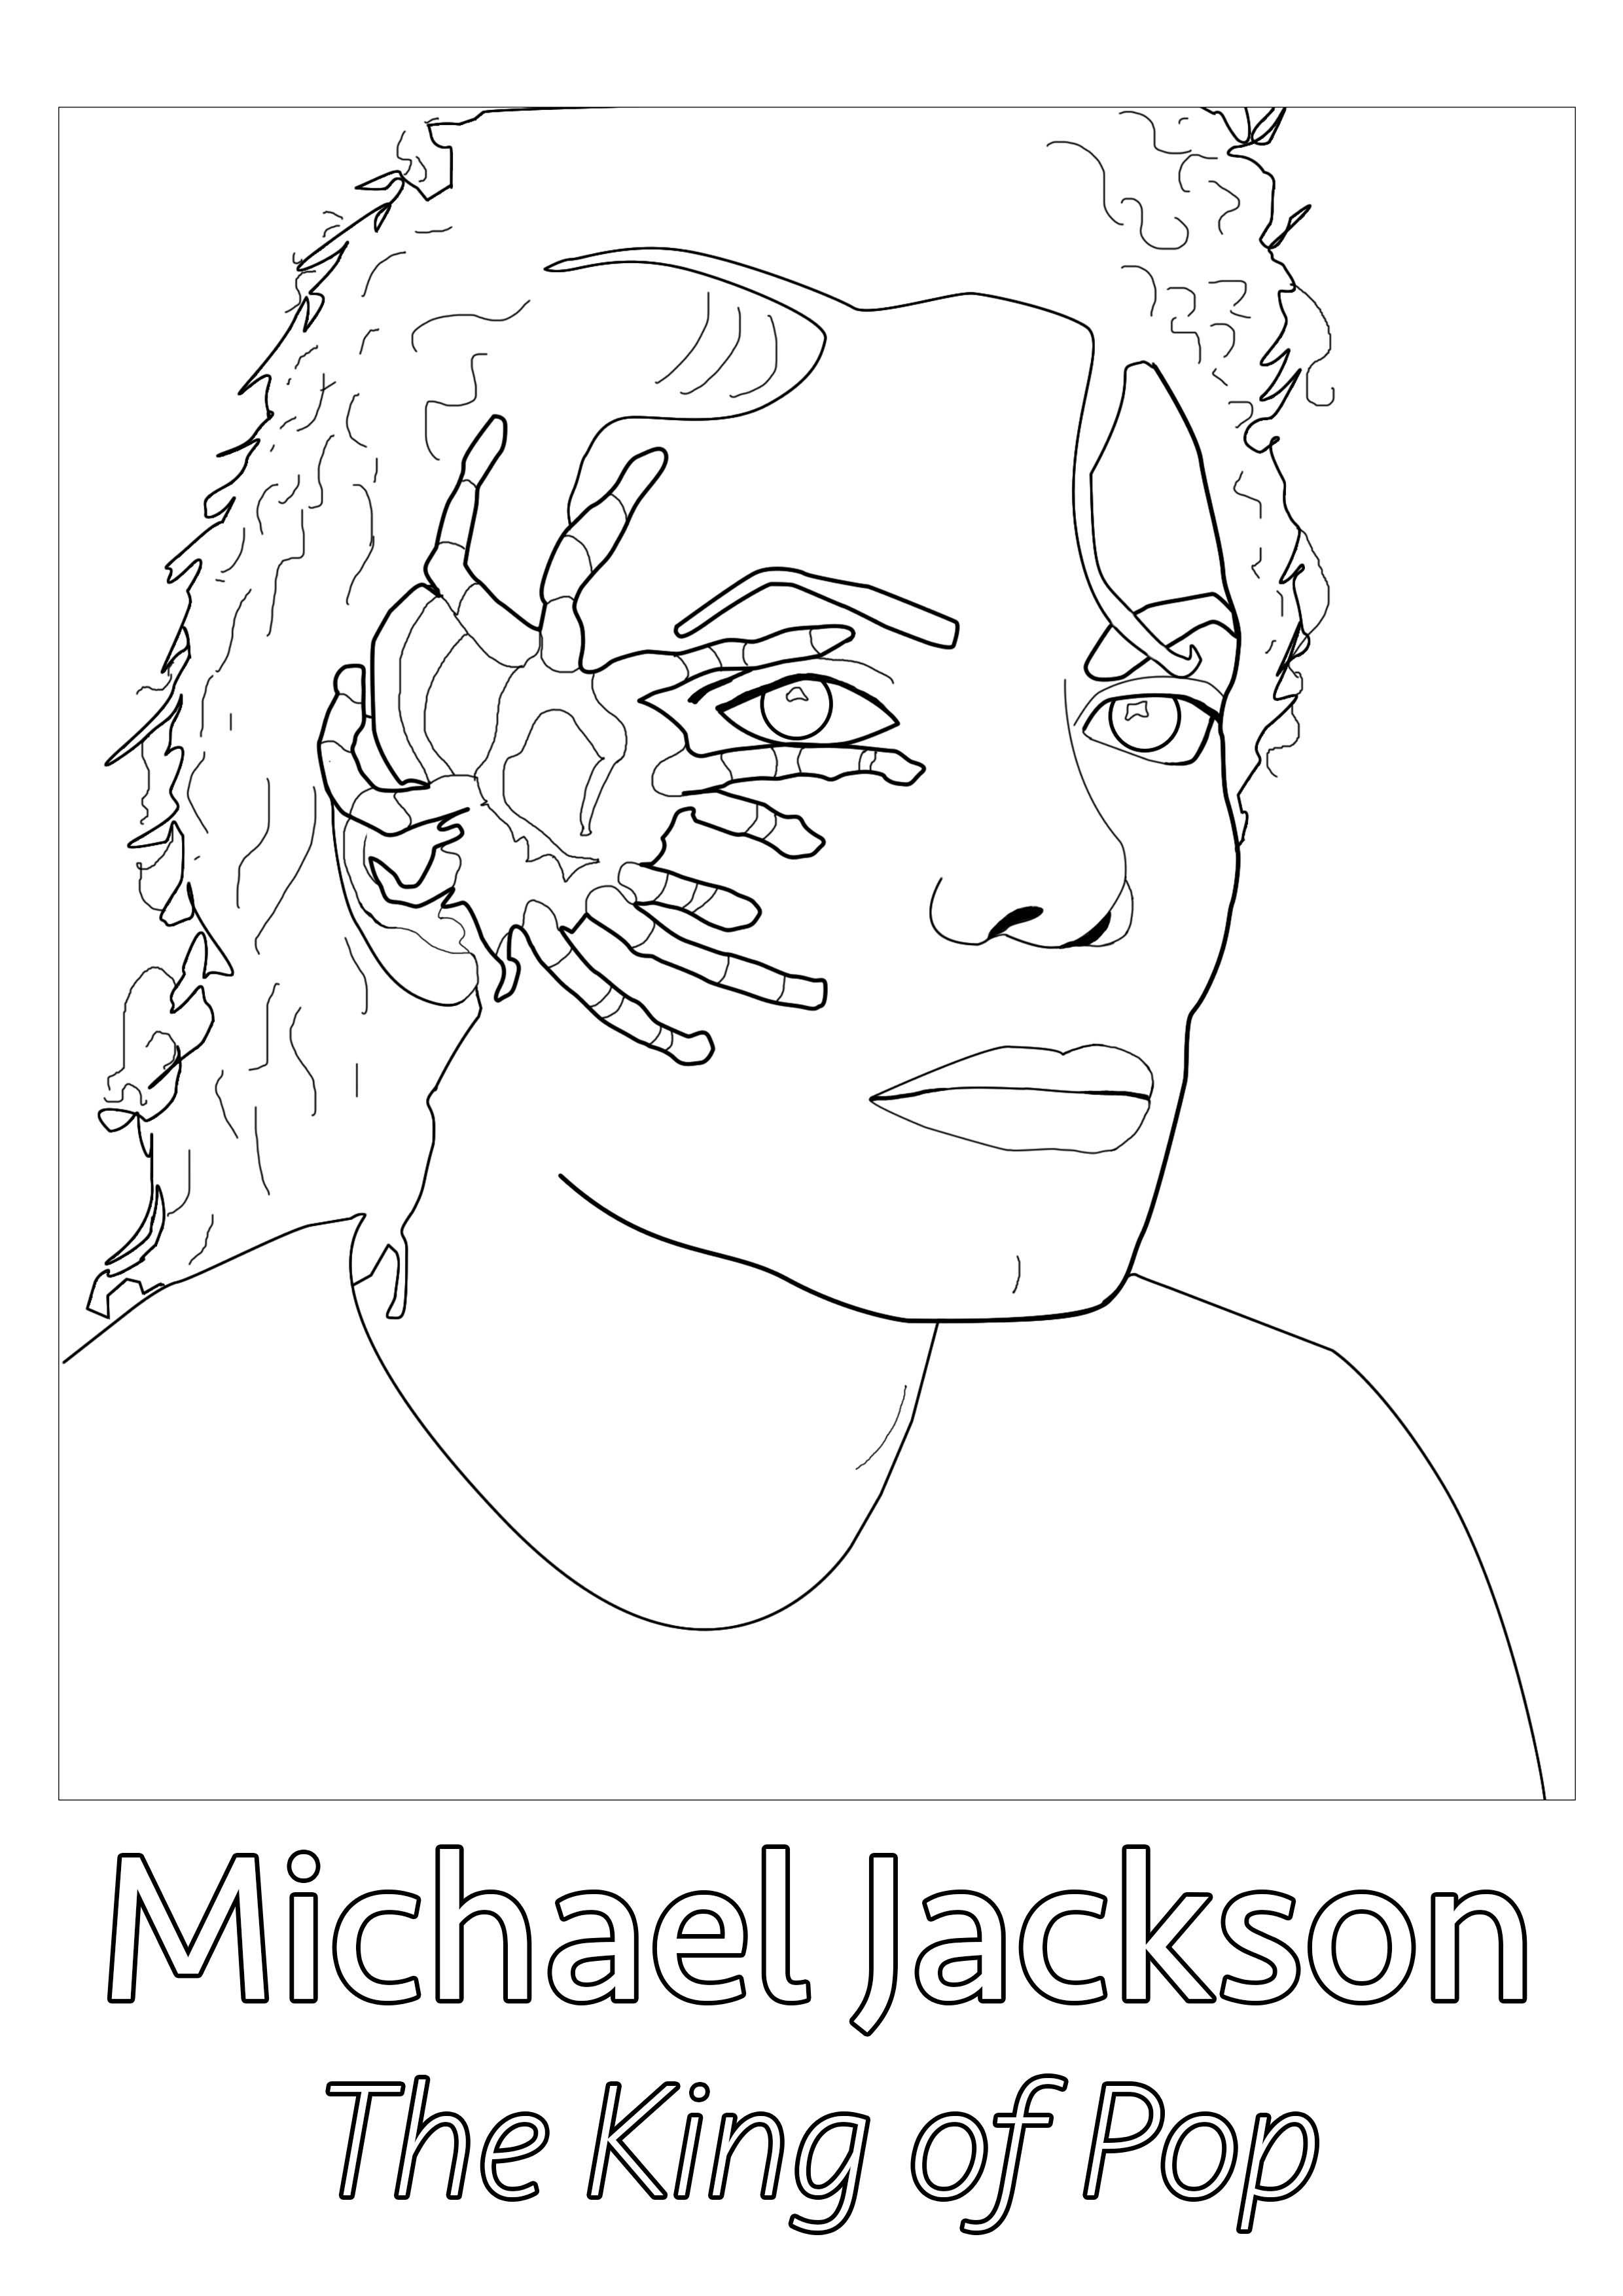 Originalzeichnung nach einem seltenen Bild von Michael Jackson, mit einer Spinne im Gesicht